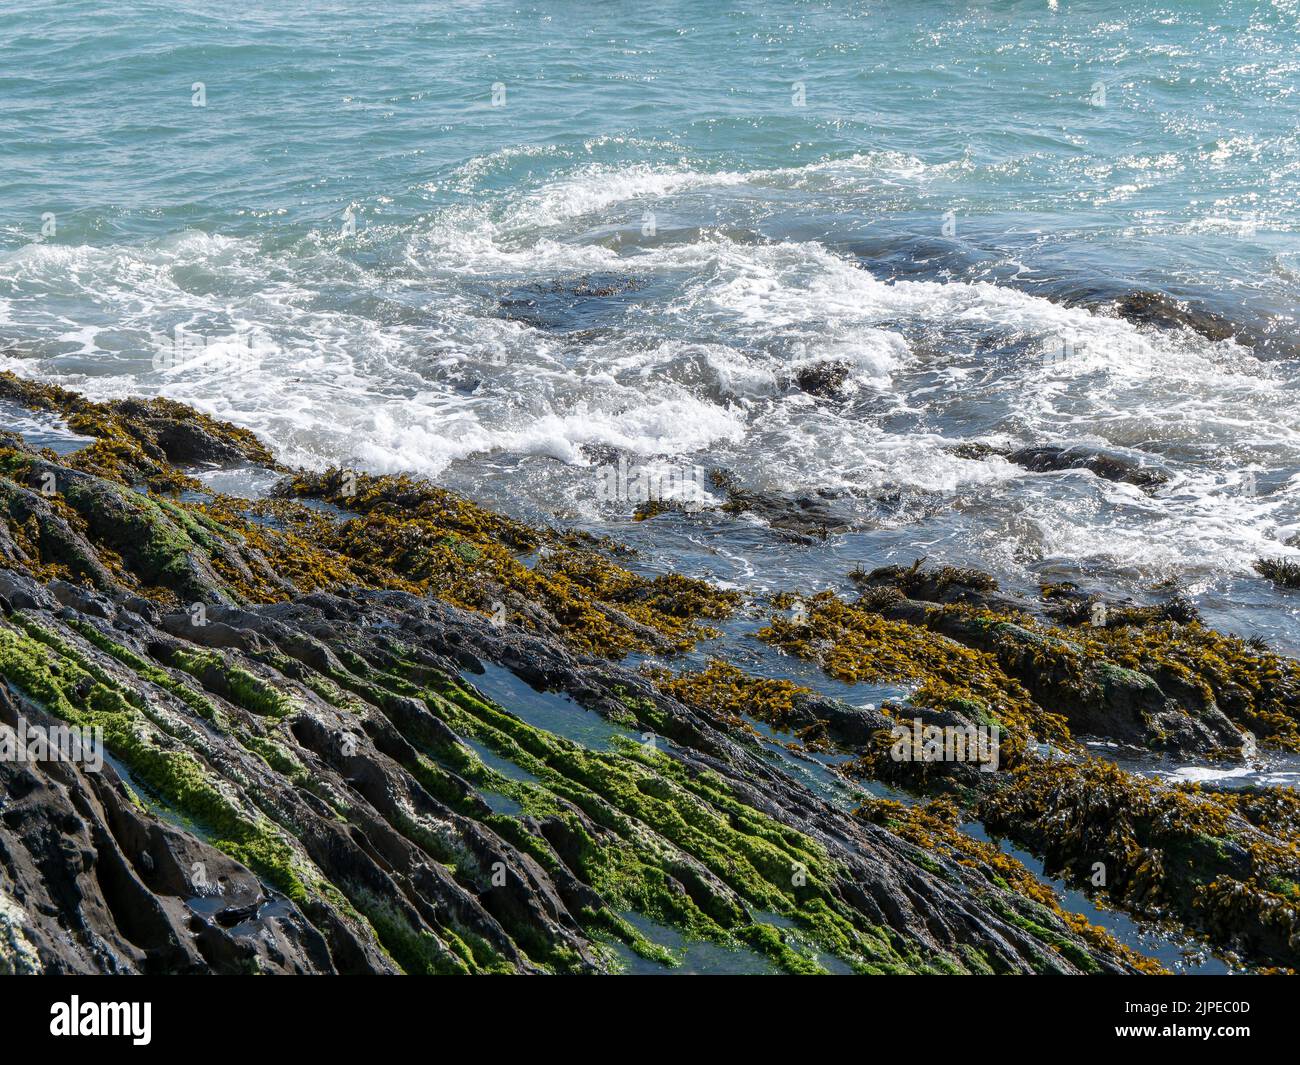 Foam on the waves and coastal rocks. Seaweed on rocks, landscape. Green moss on rock near body of water Stock Photo